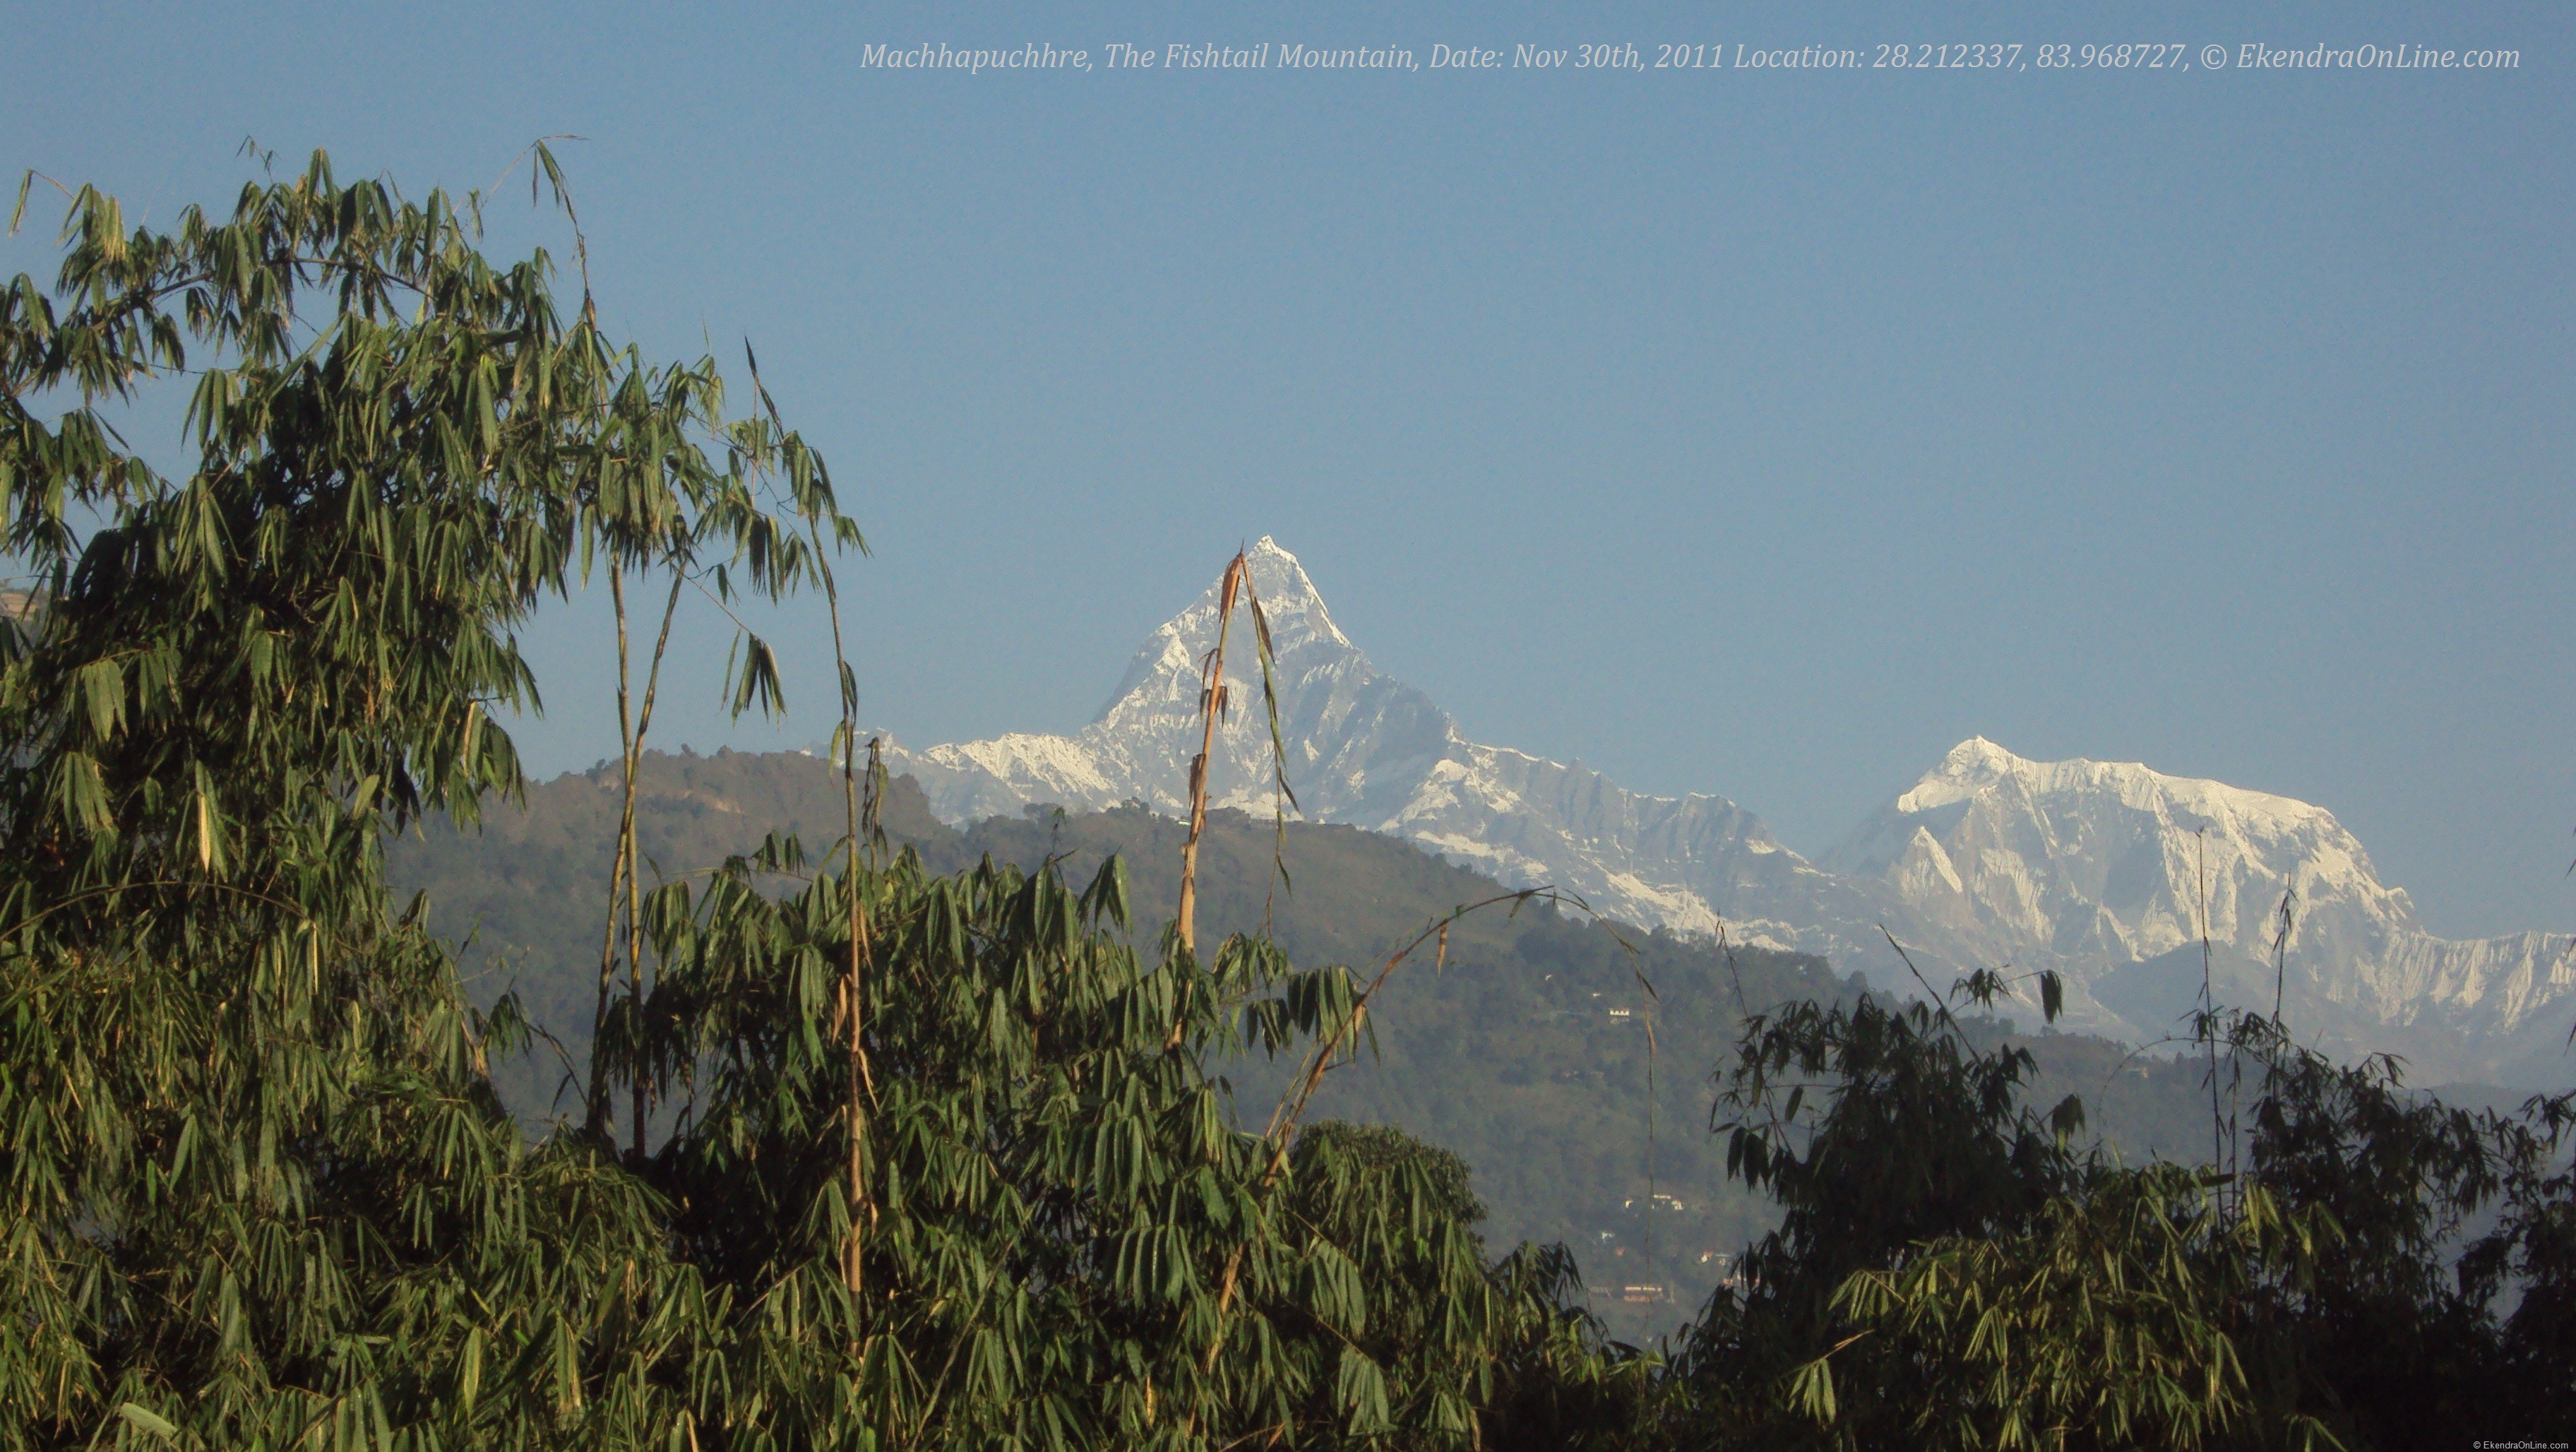 Machhapuchhre, The Fishtail Mountain, Nov 30th, 2011, from Pokhara